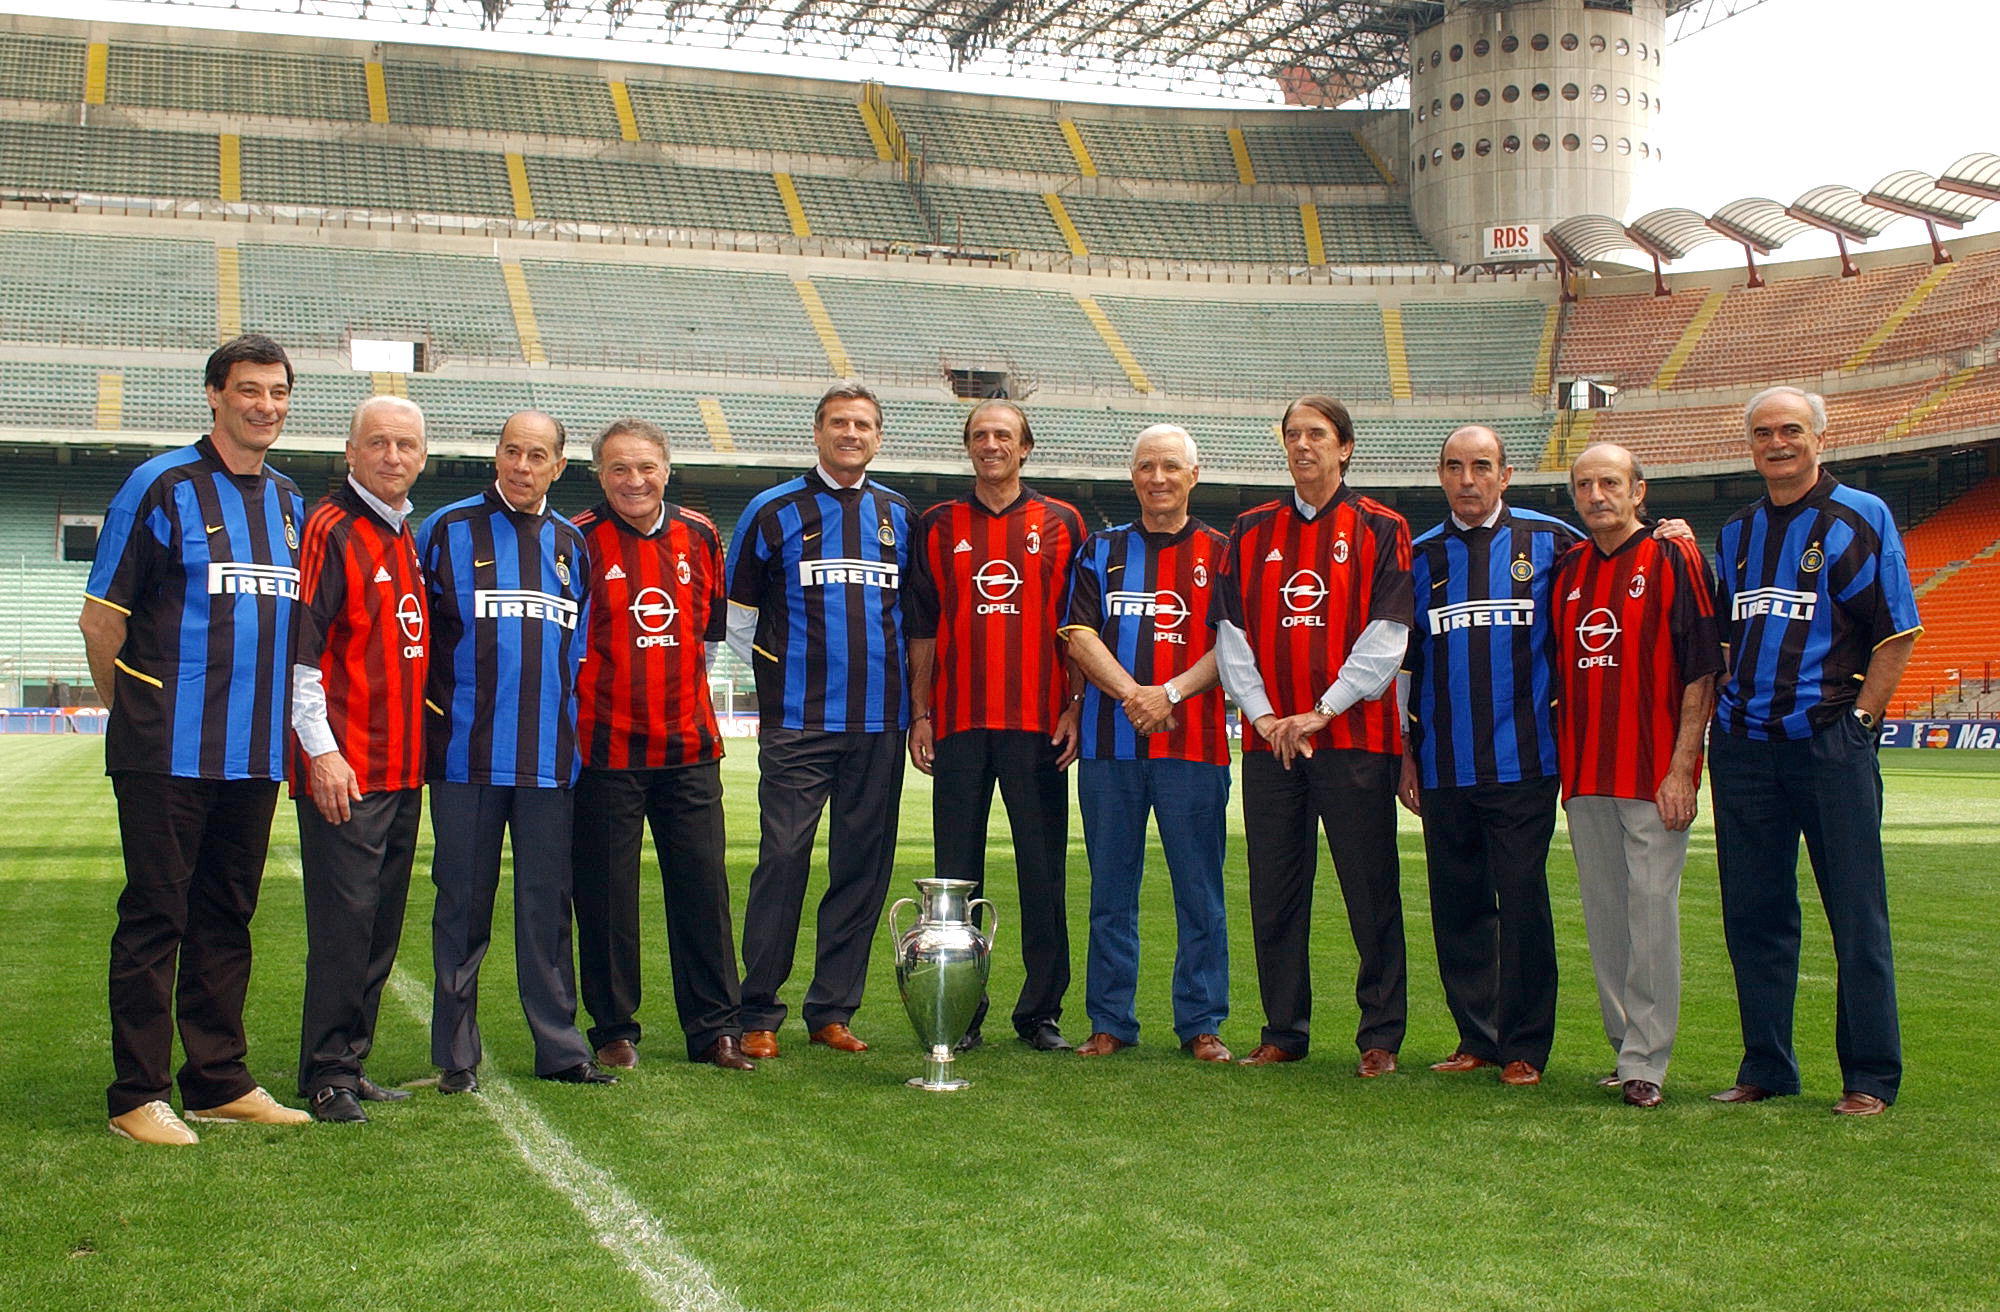 Por qu el estadio del Milan e Inter se llama Giuseppe Meazza y San Siro?